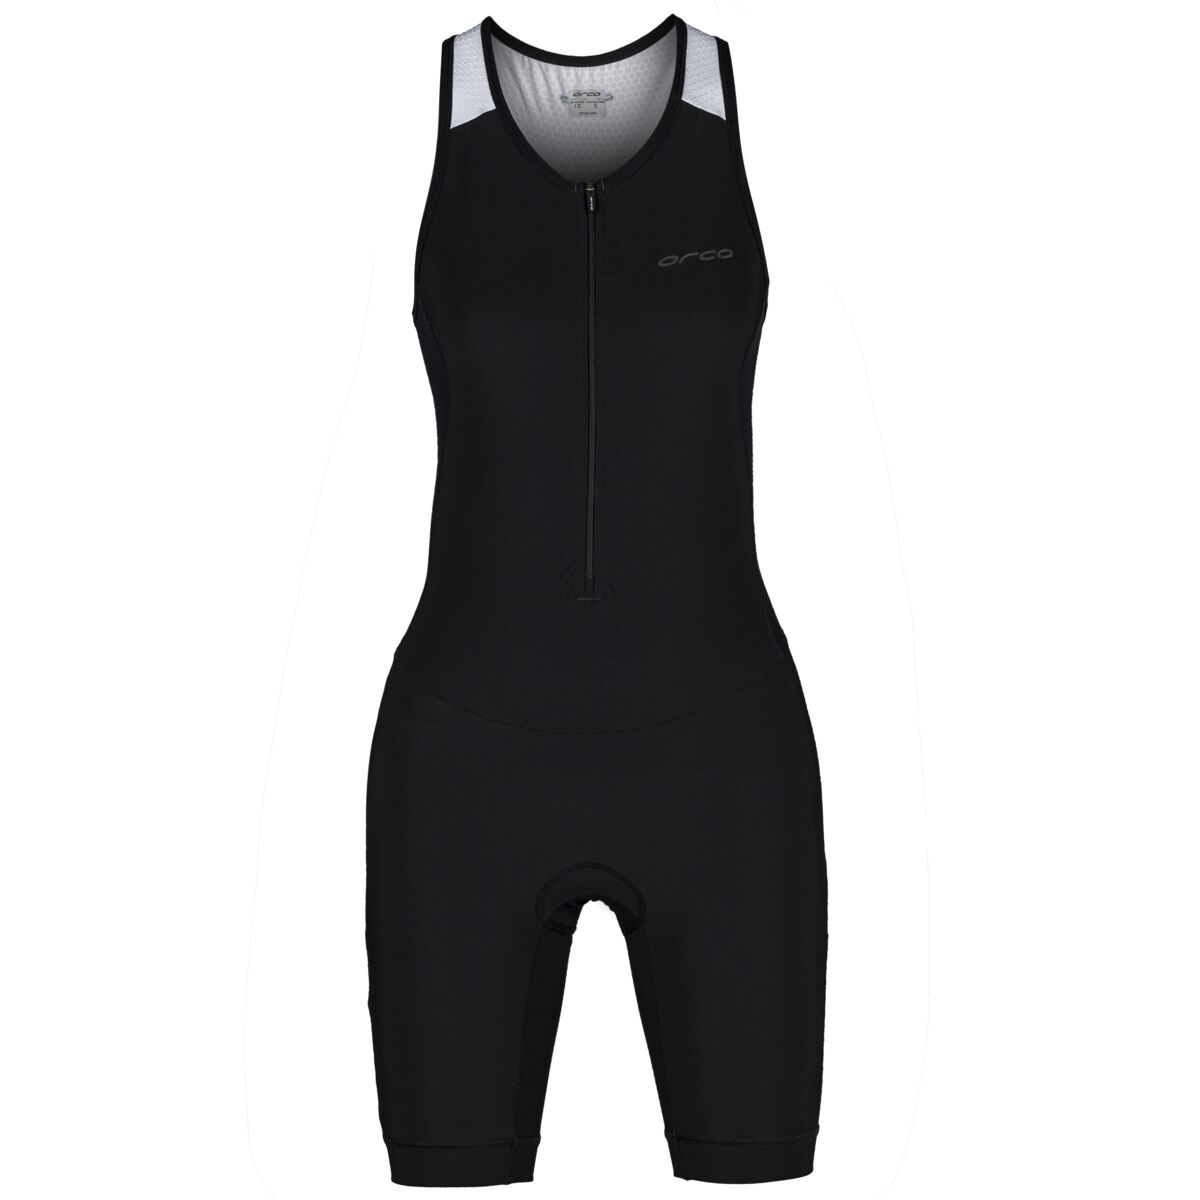 Orca Athlex Women's Race Suit - size S